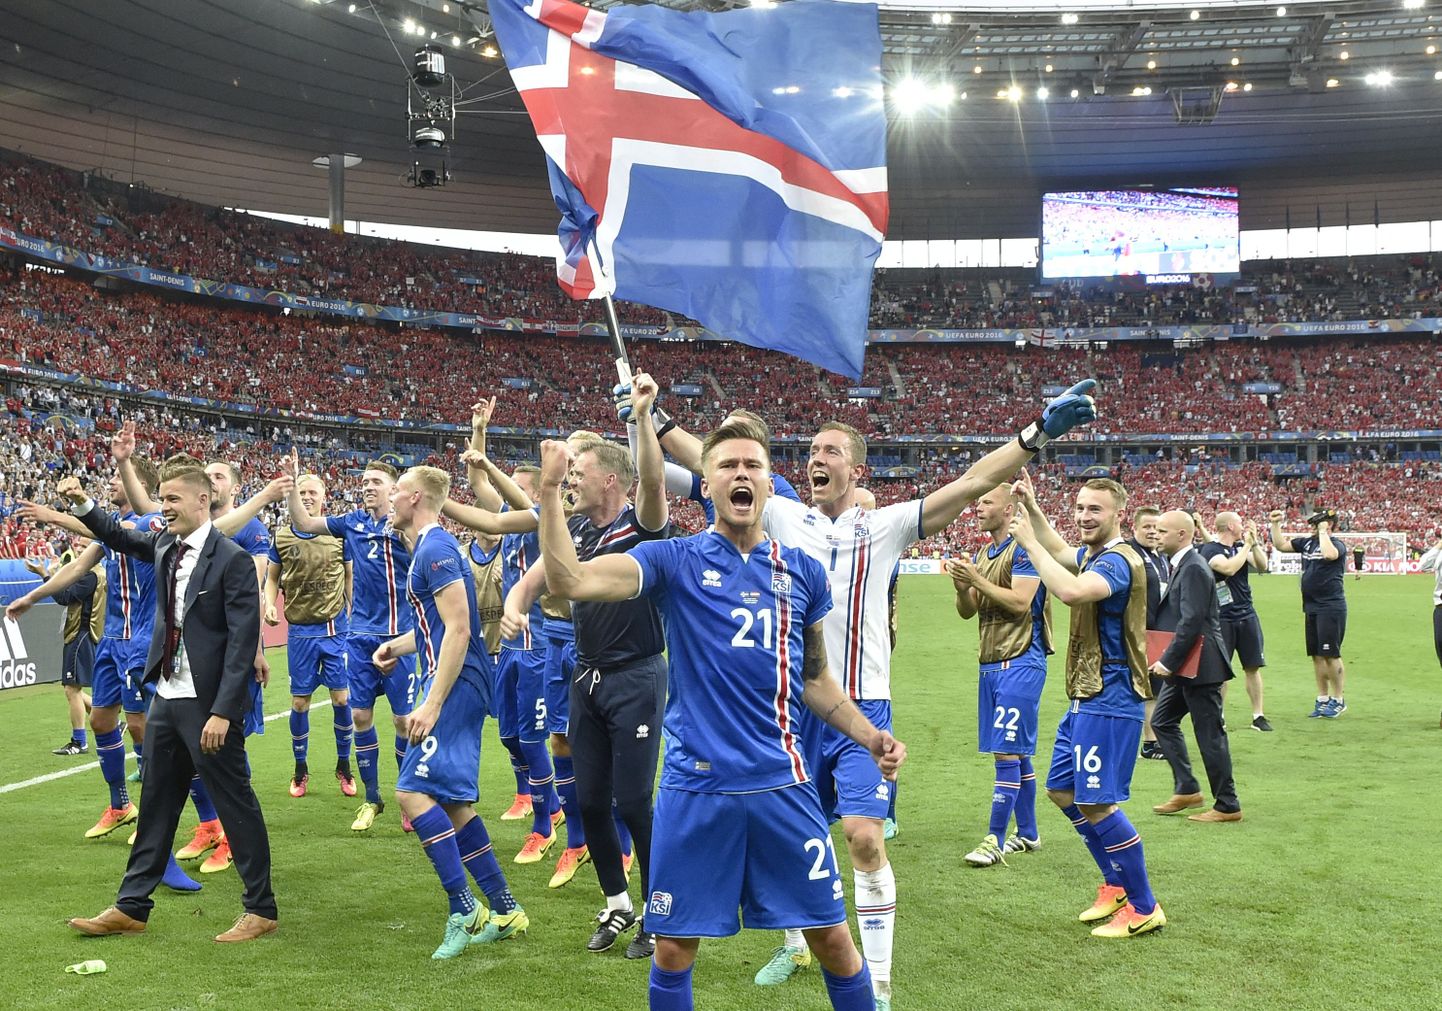 Esmakordselt finaalturniiril osalev Island naudib EMi täiel rinnal.